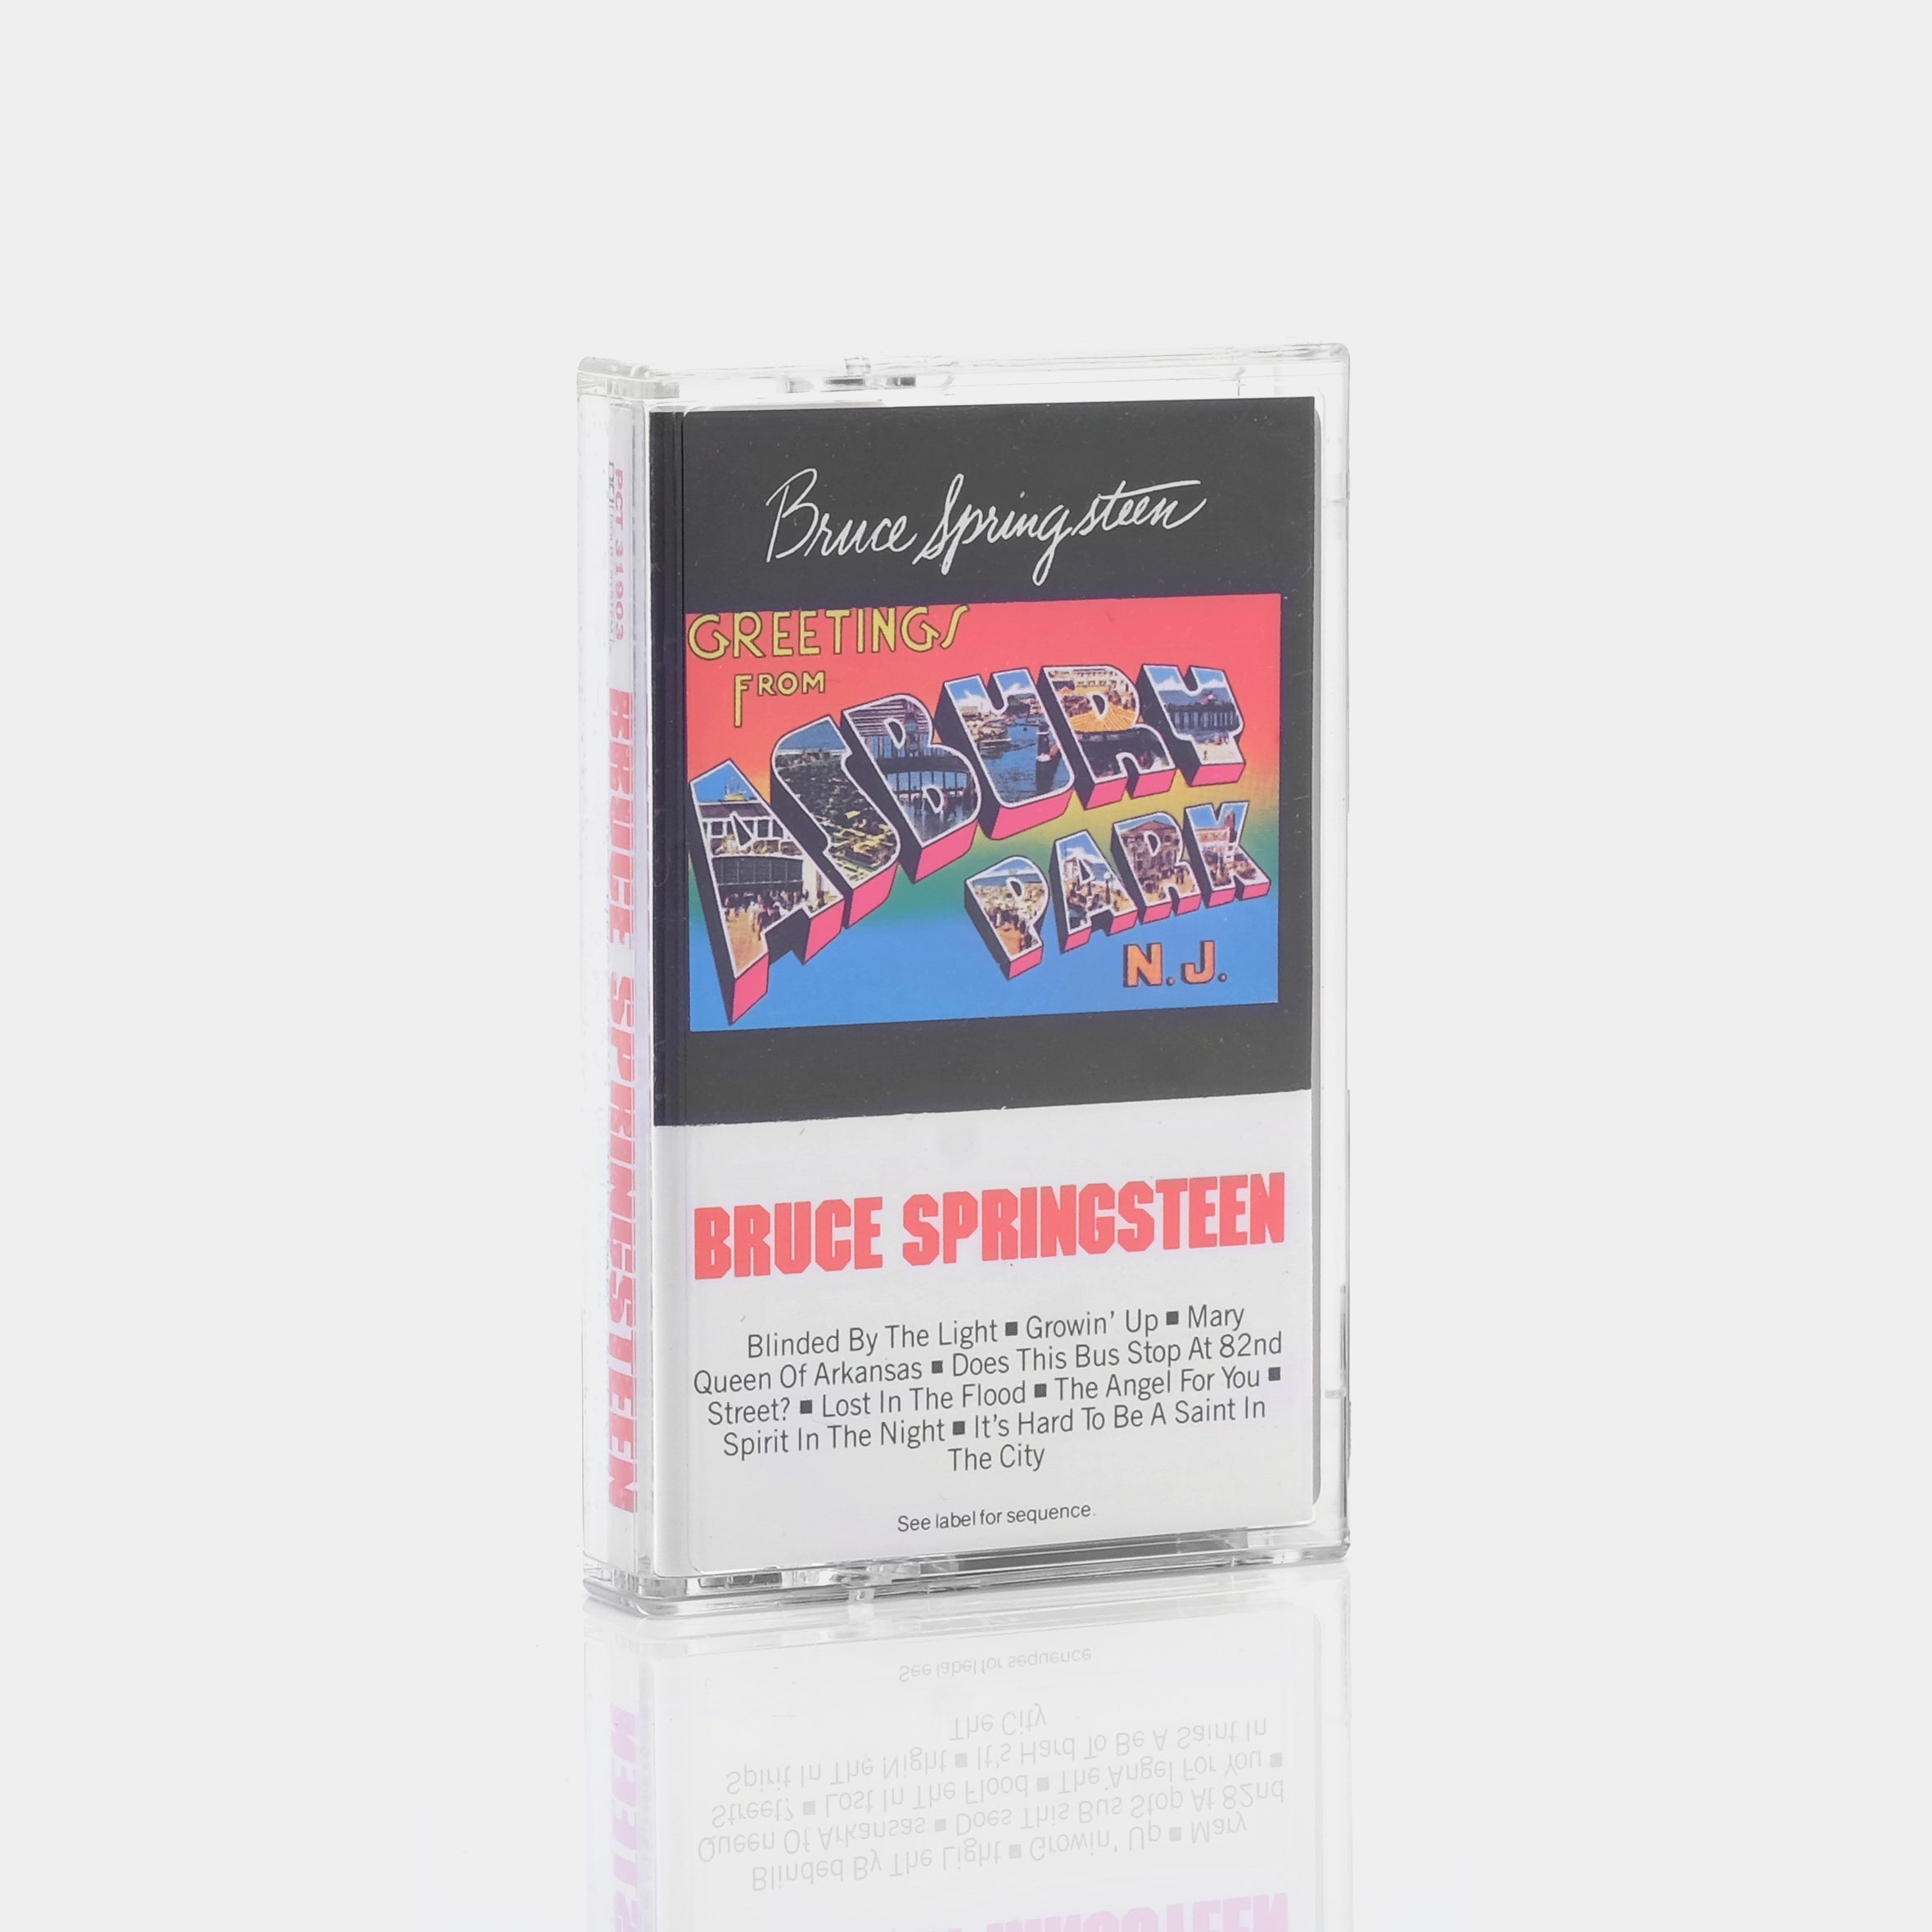 Bruce Springsteen - Greetings From Ashbury Park N.J. Cassette Tape